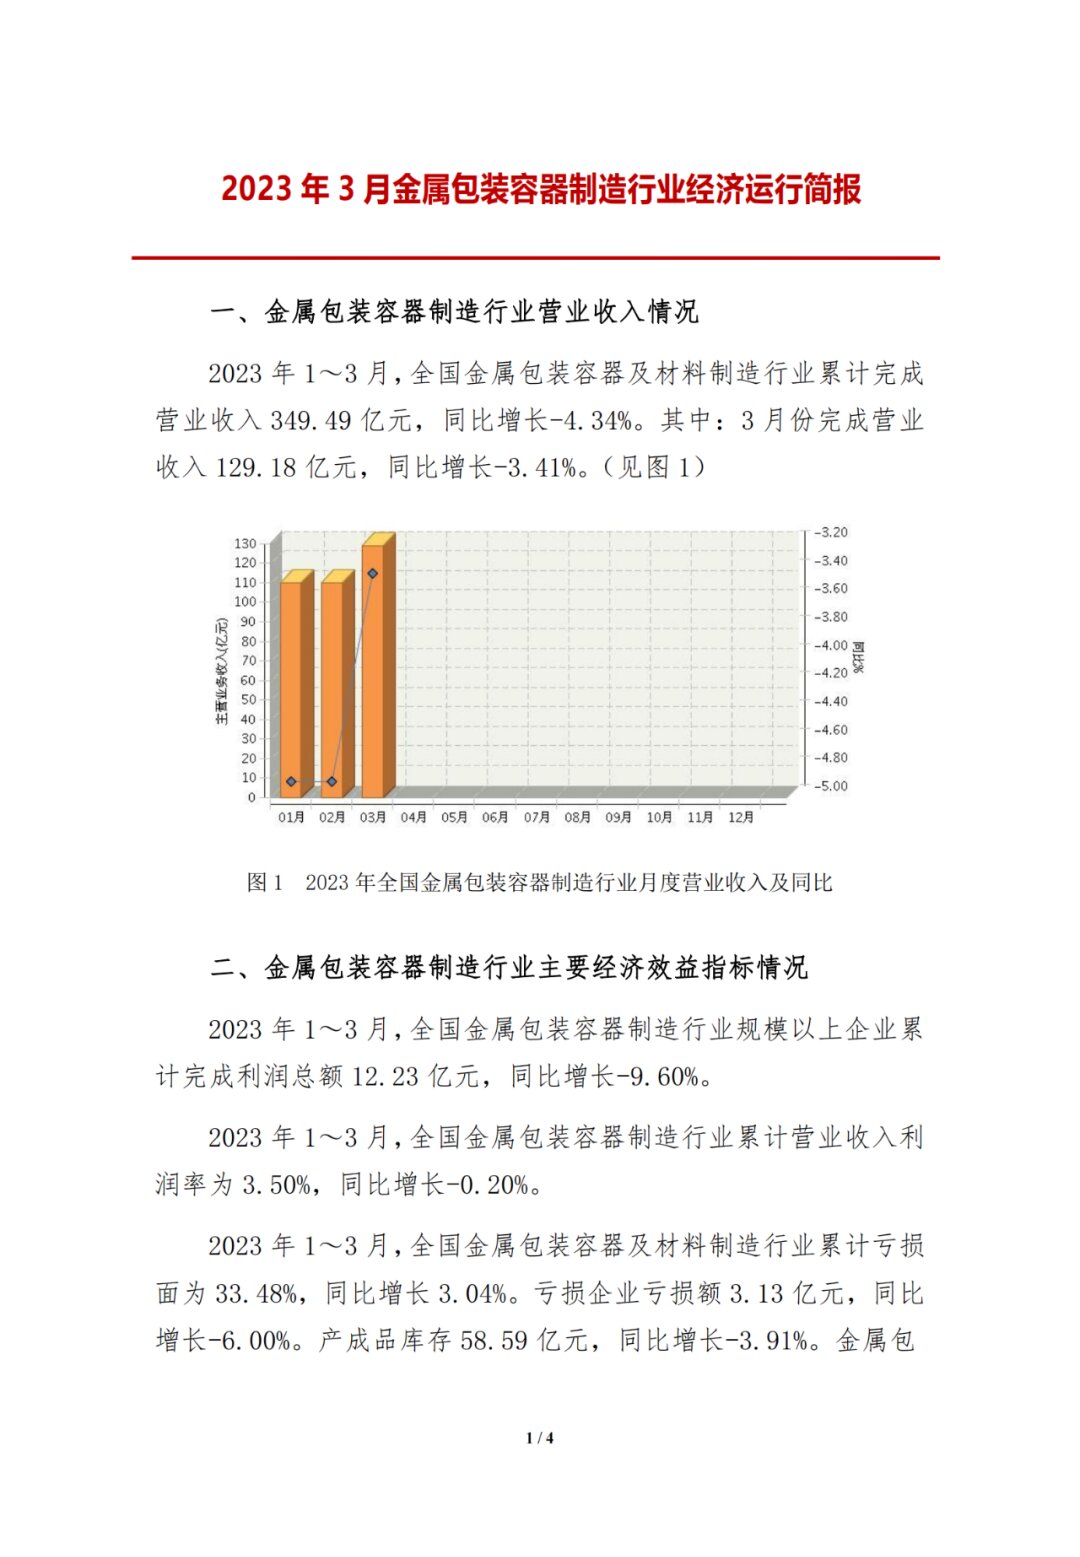 行业报告|中国包装联合会最新发布《2023年3月金属包装容器制造行业经济运行简报》